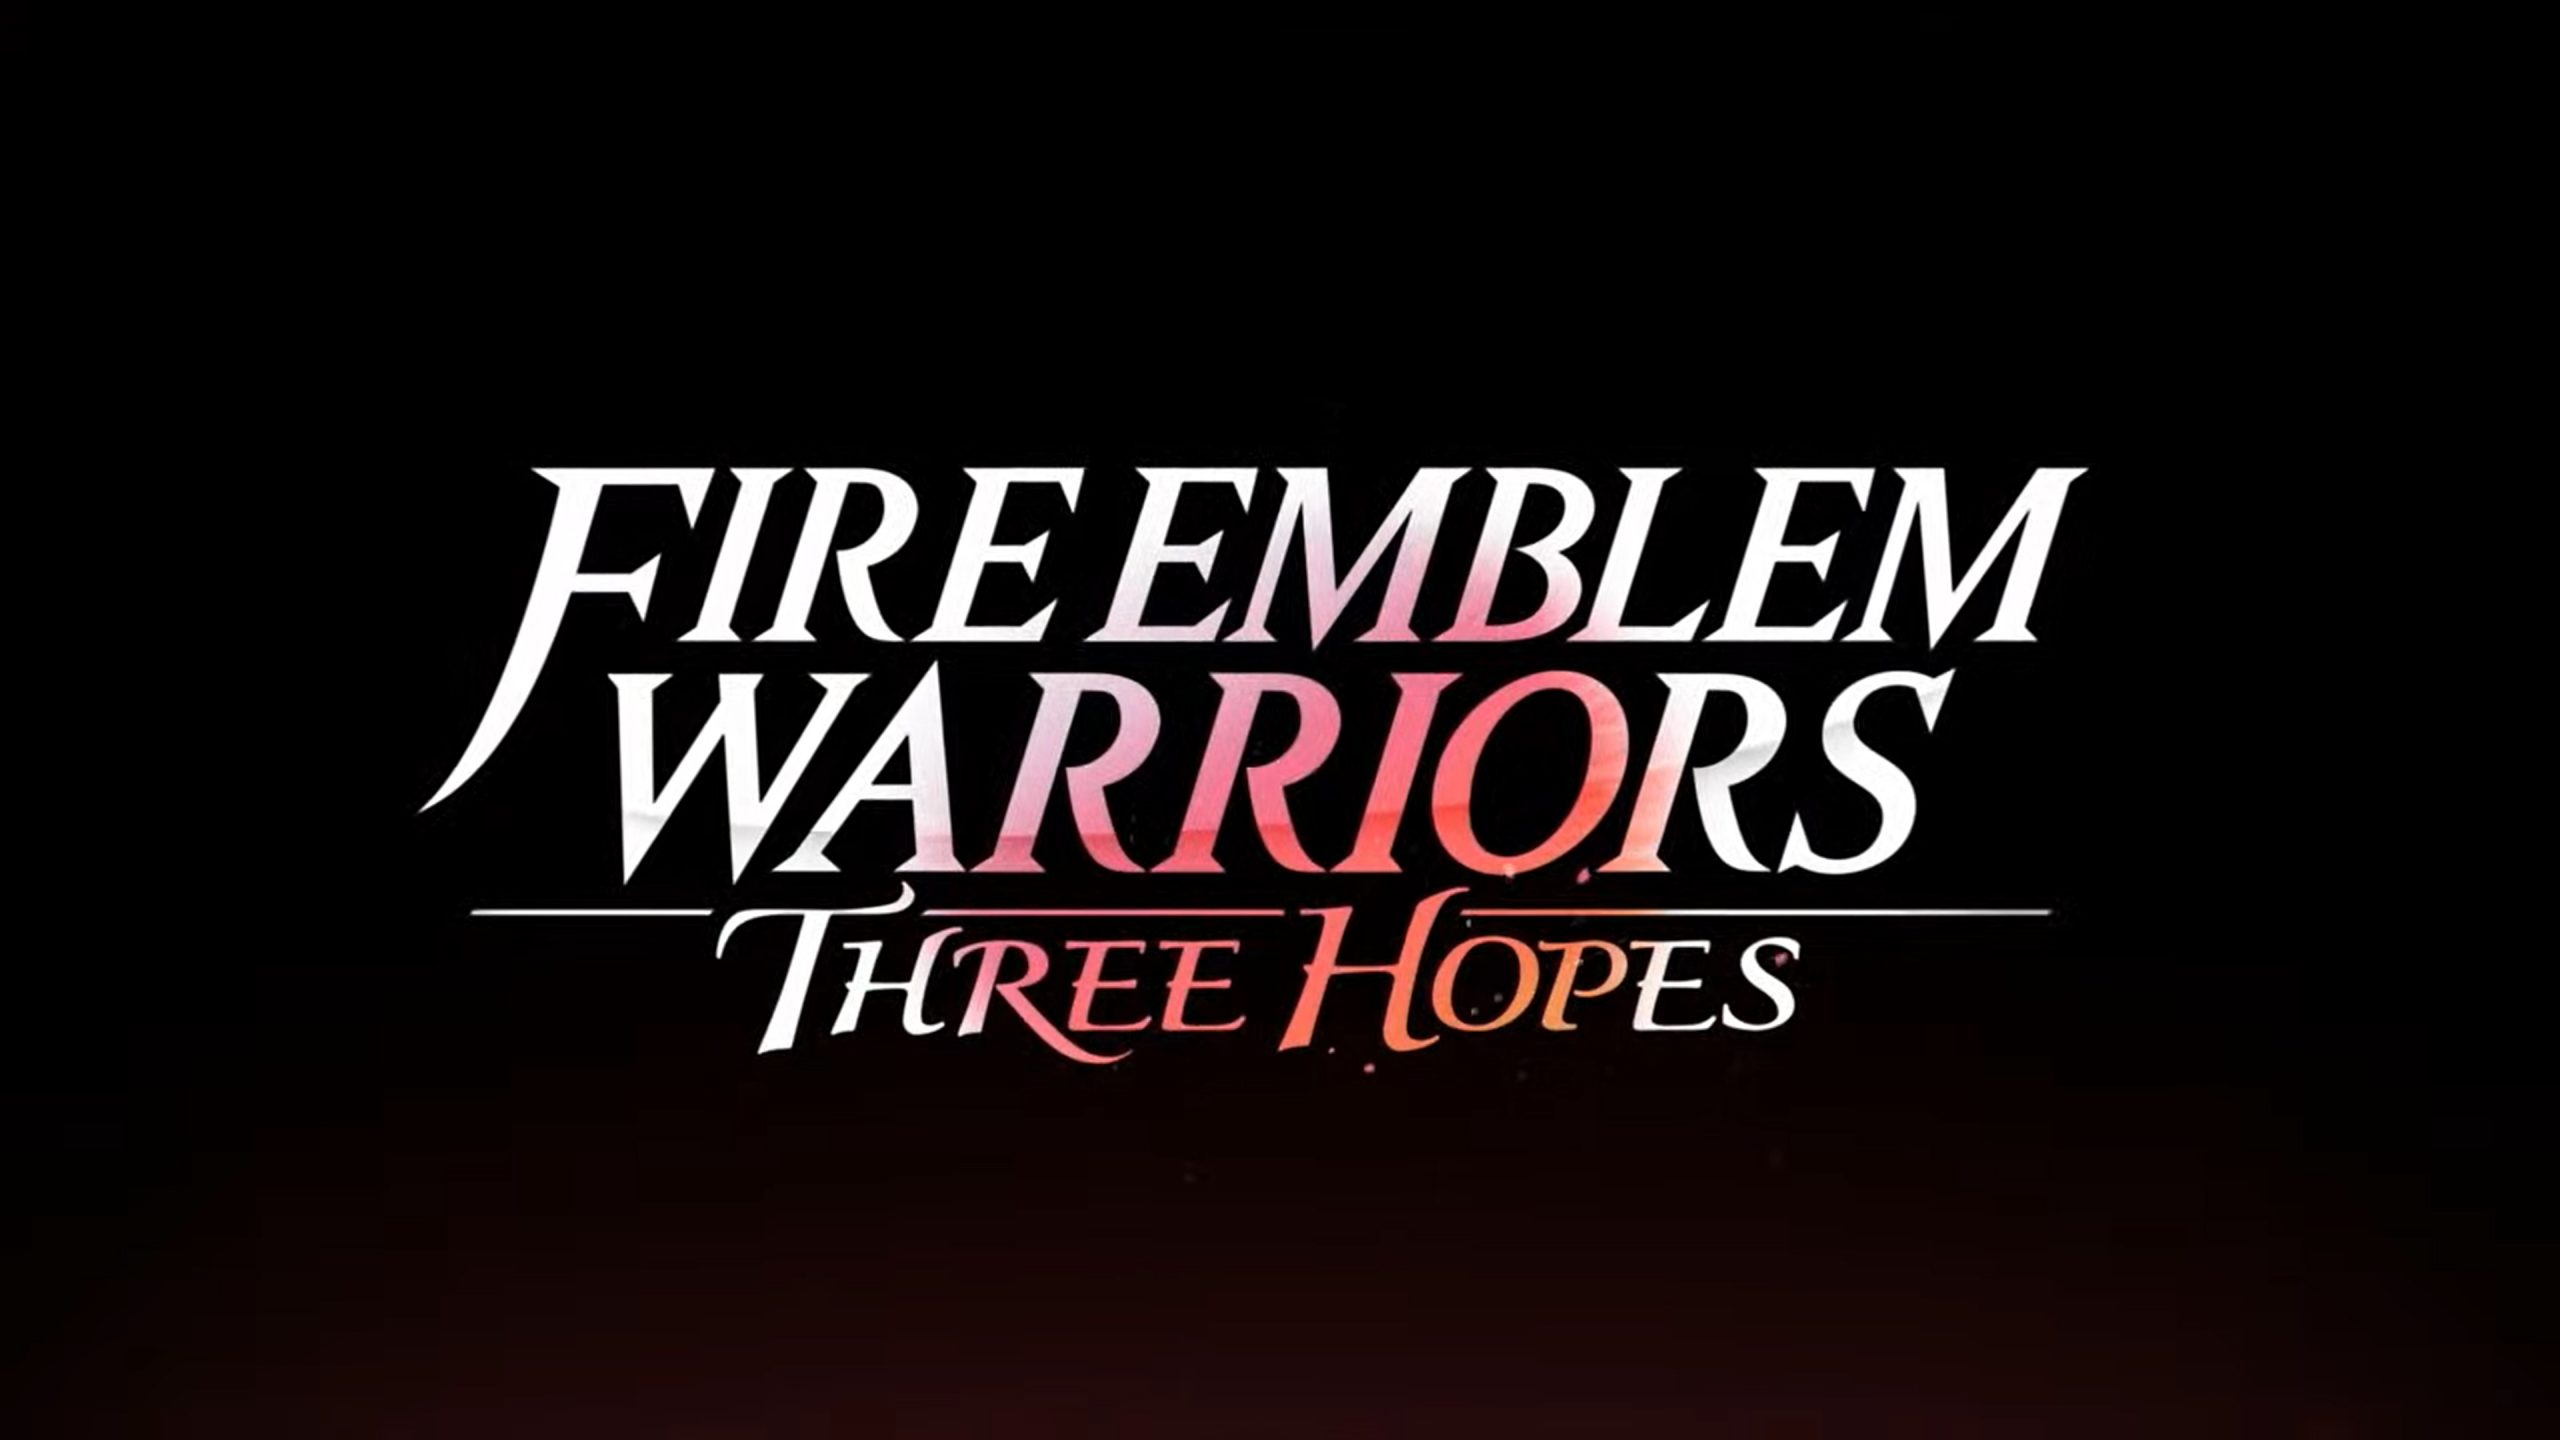 Emblem warriors fire Fire Emblem